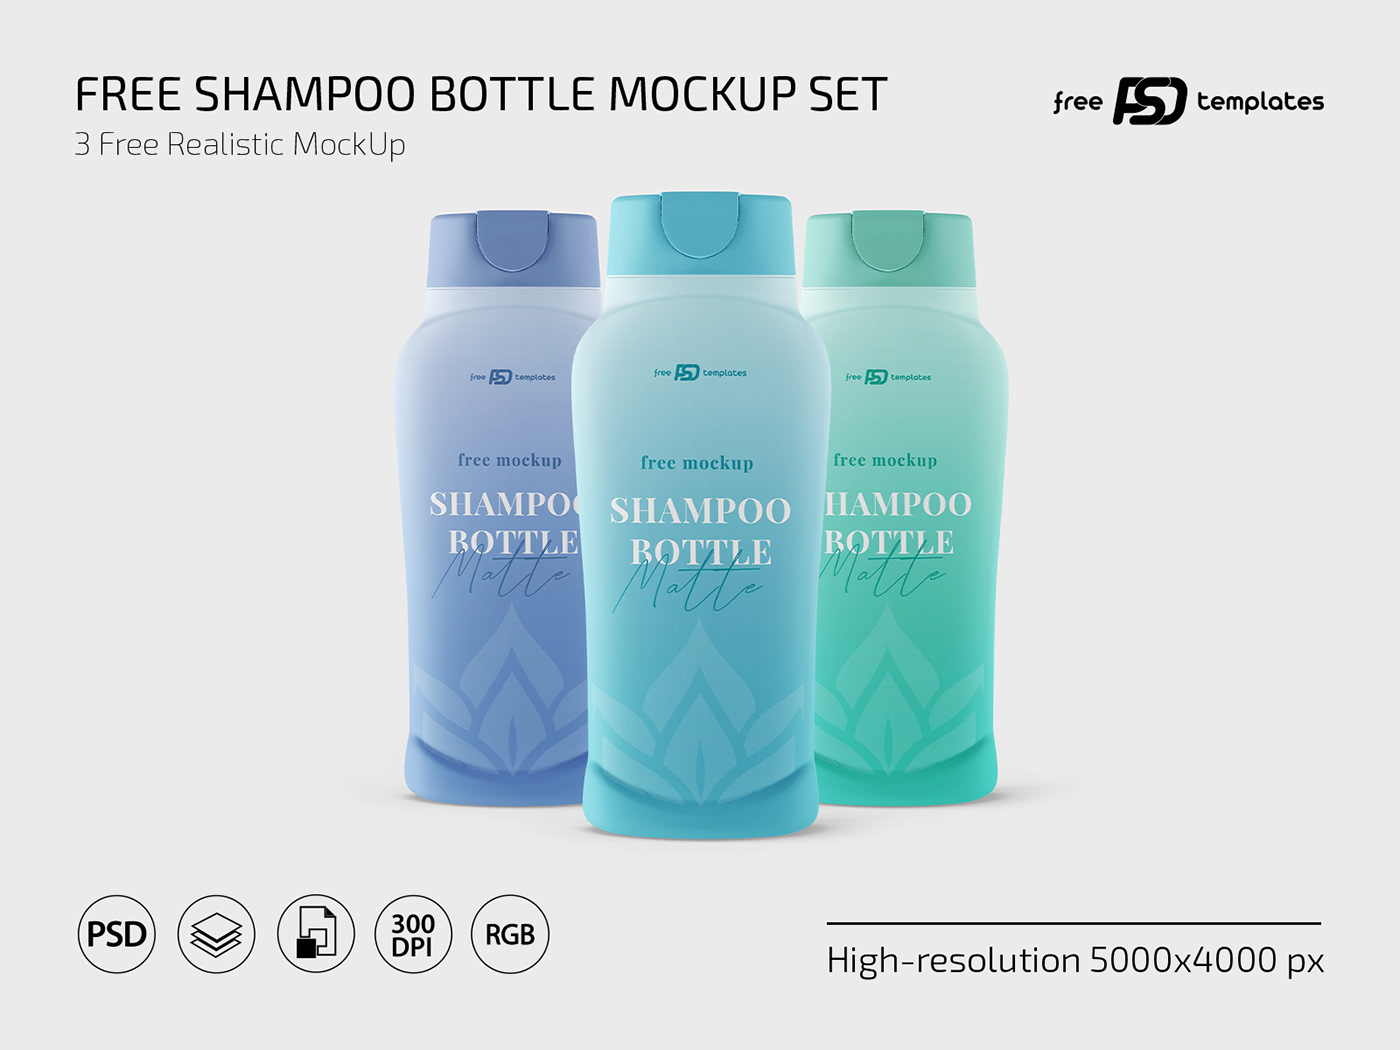 bottle bottles mock up Mockup mockups shampoo template templates shampoo bottle shampoo packaging